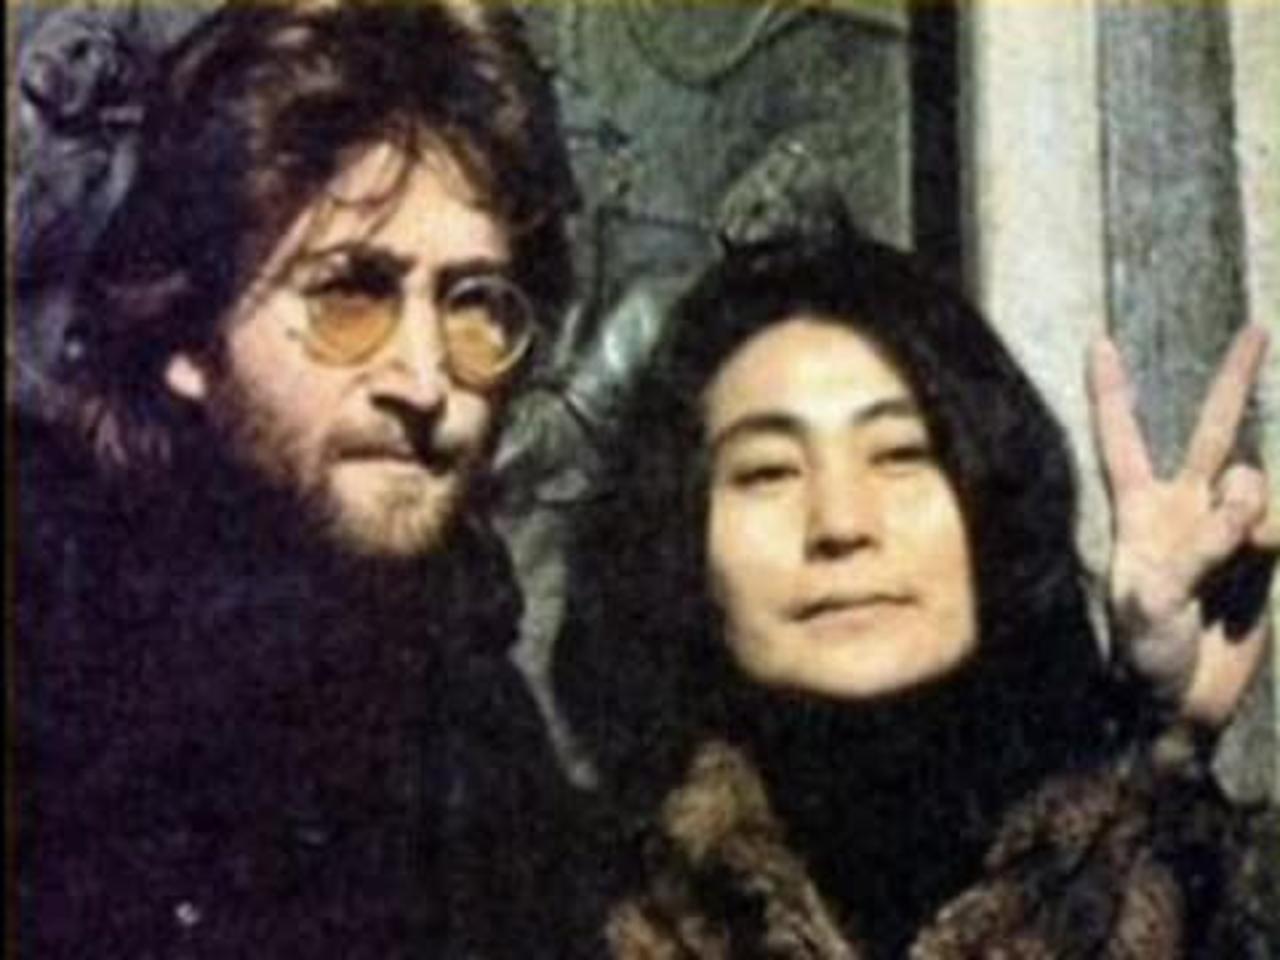 Lennon Remembers, John Lennon 4 hour interview [remastered audio]